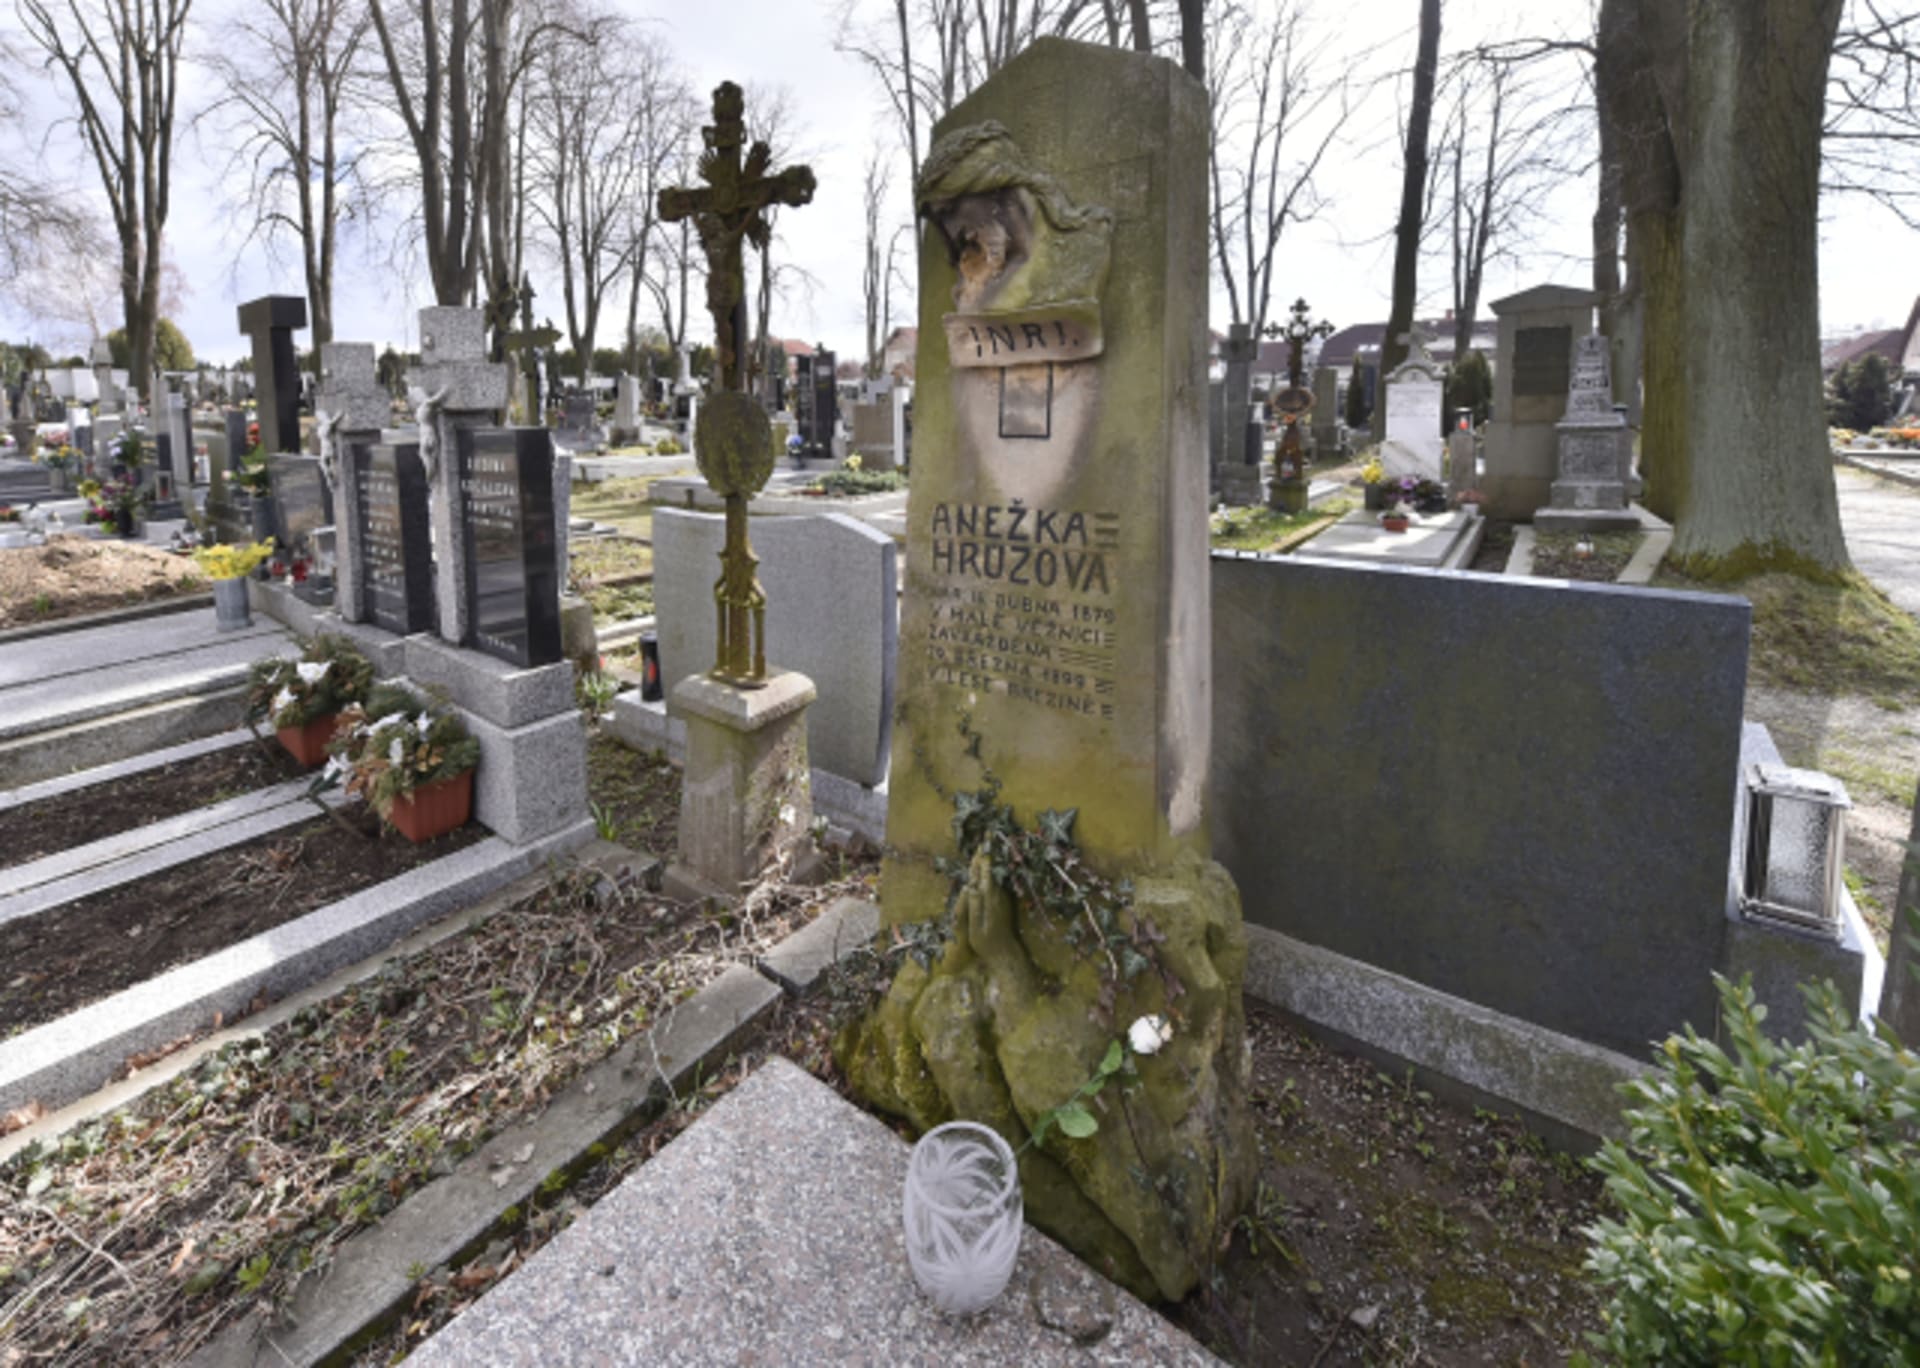 Hrob Anežky Hrůzové spolu s místem vraždy patří k oblíbeným místům připomínkových akcí antisemitů a neonacistů.